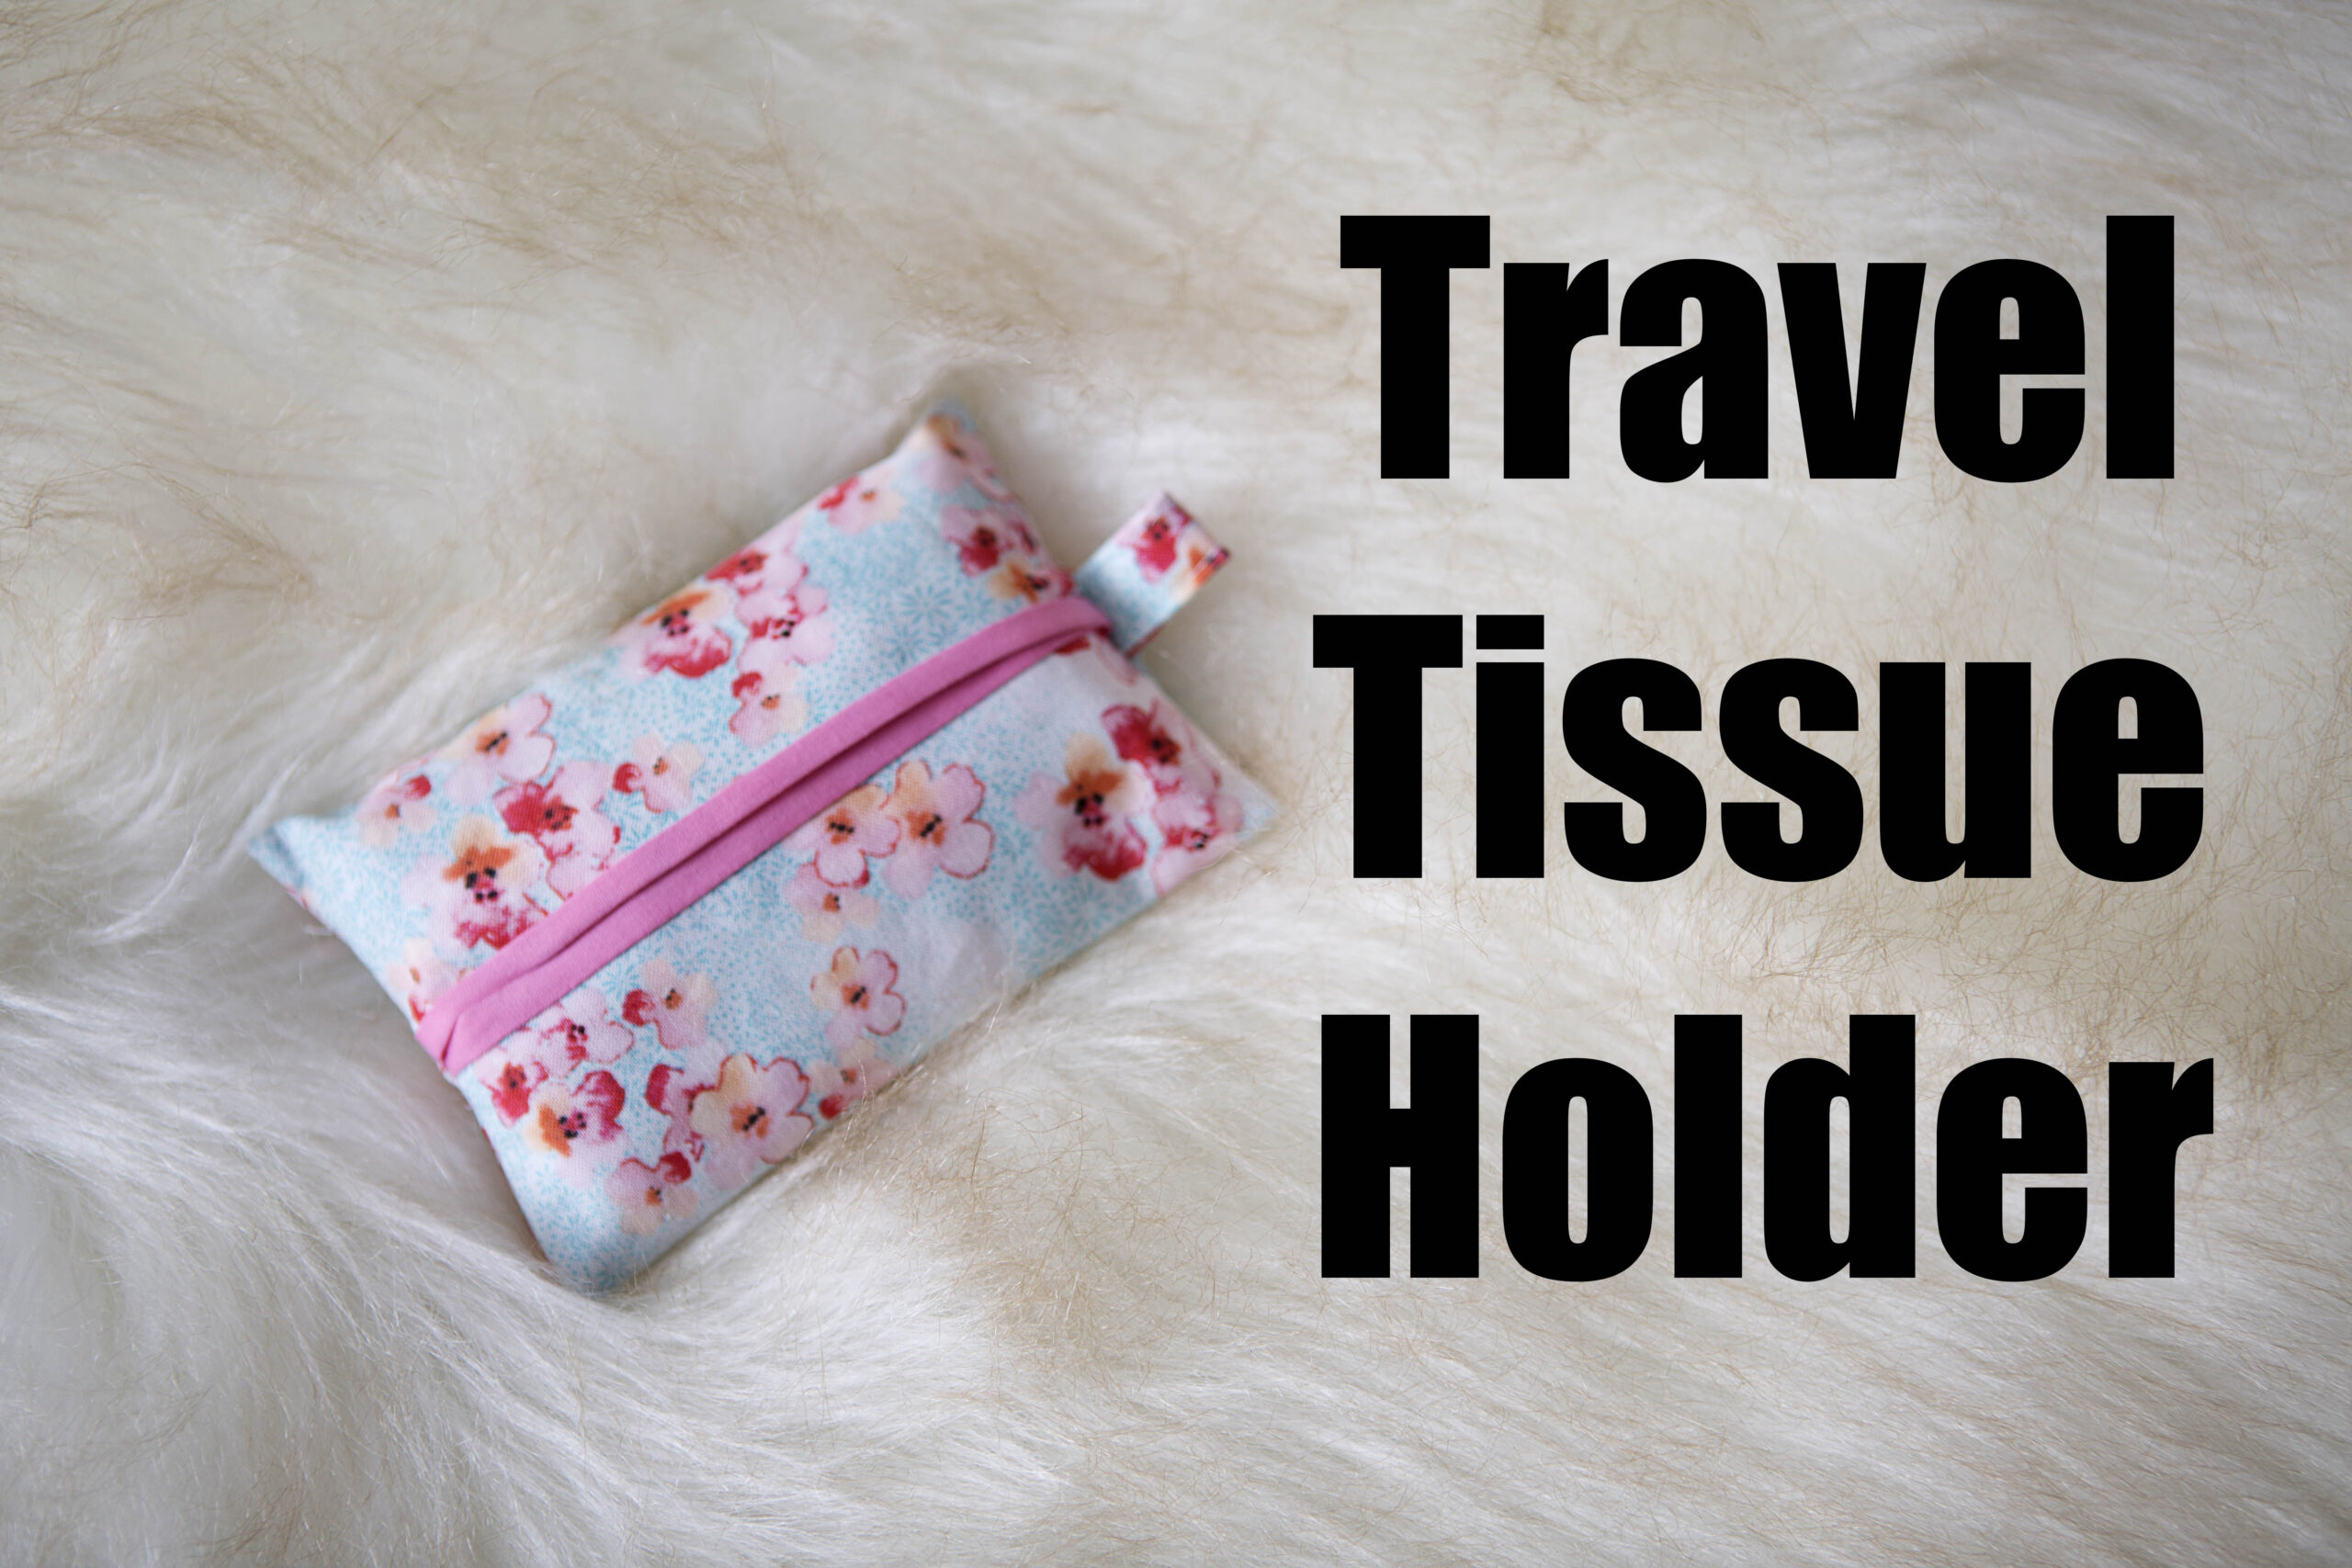 Tissue travel package holder